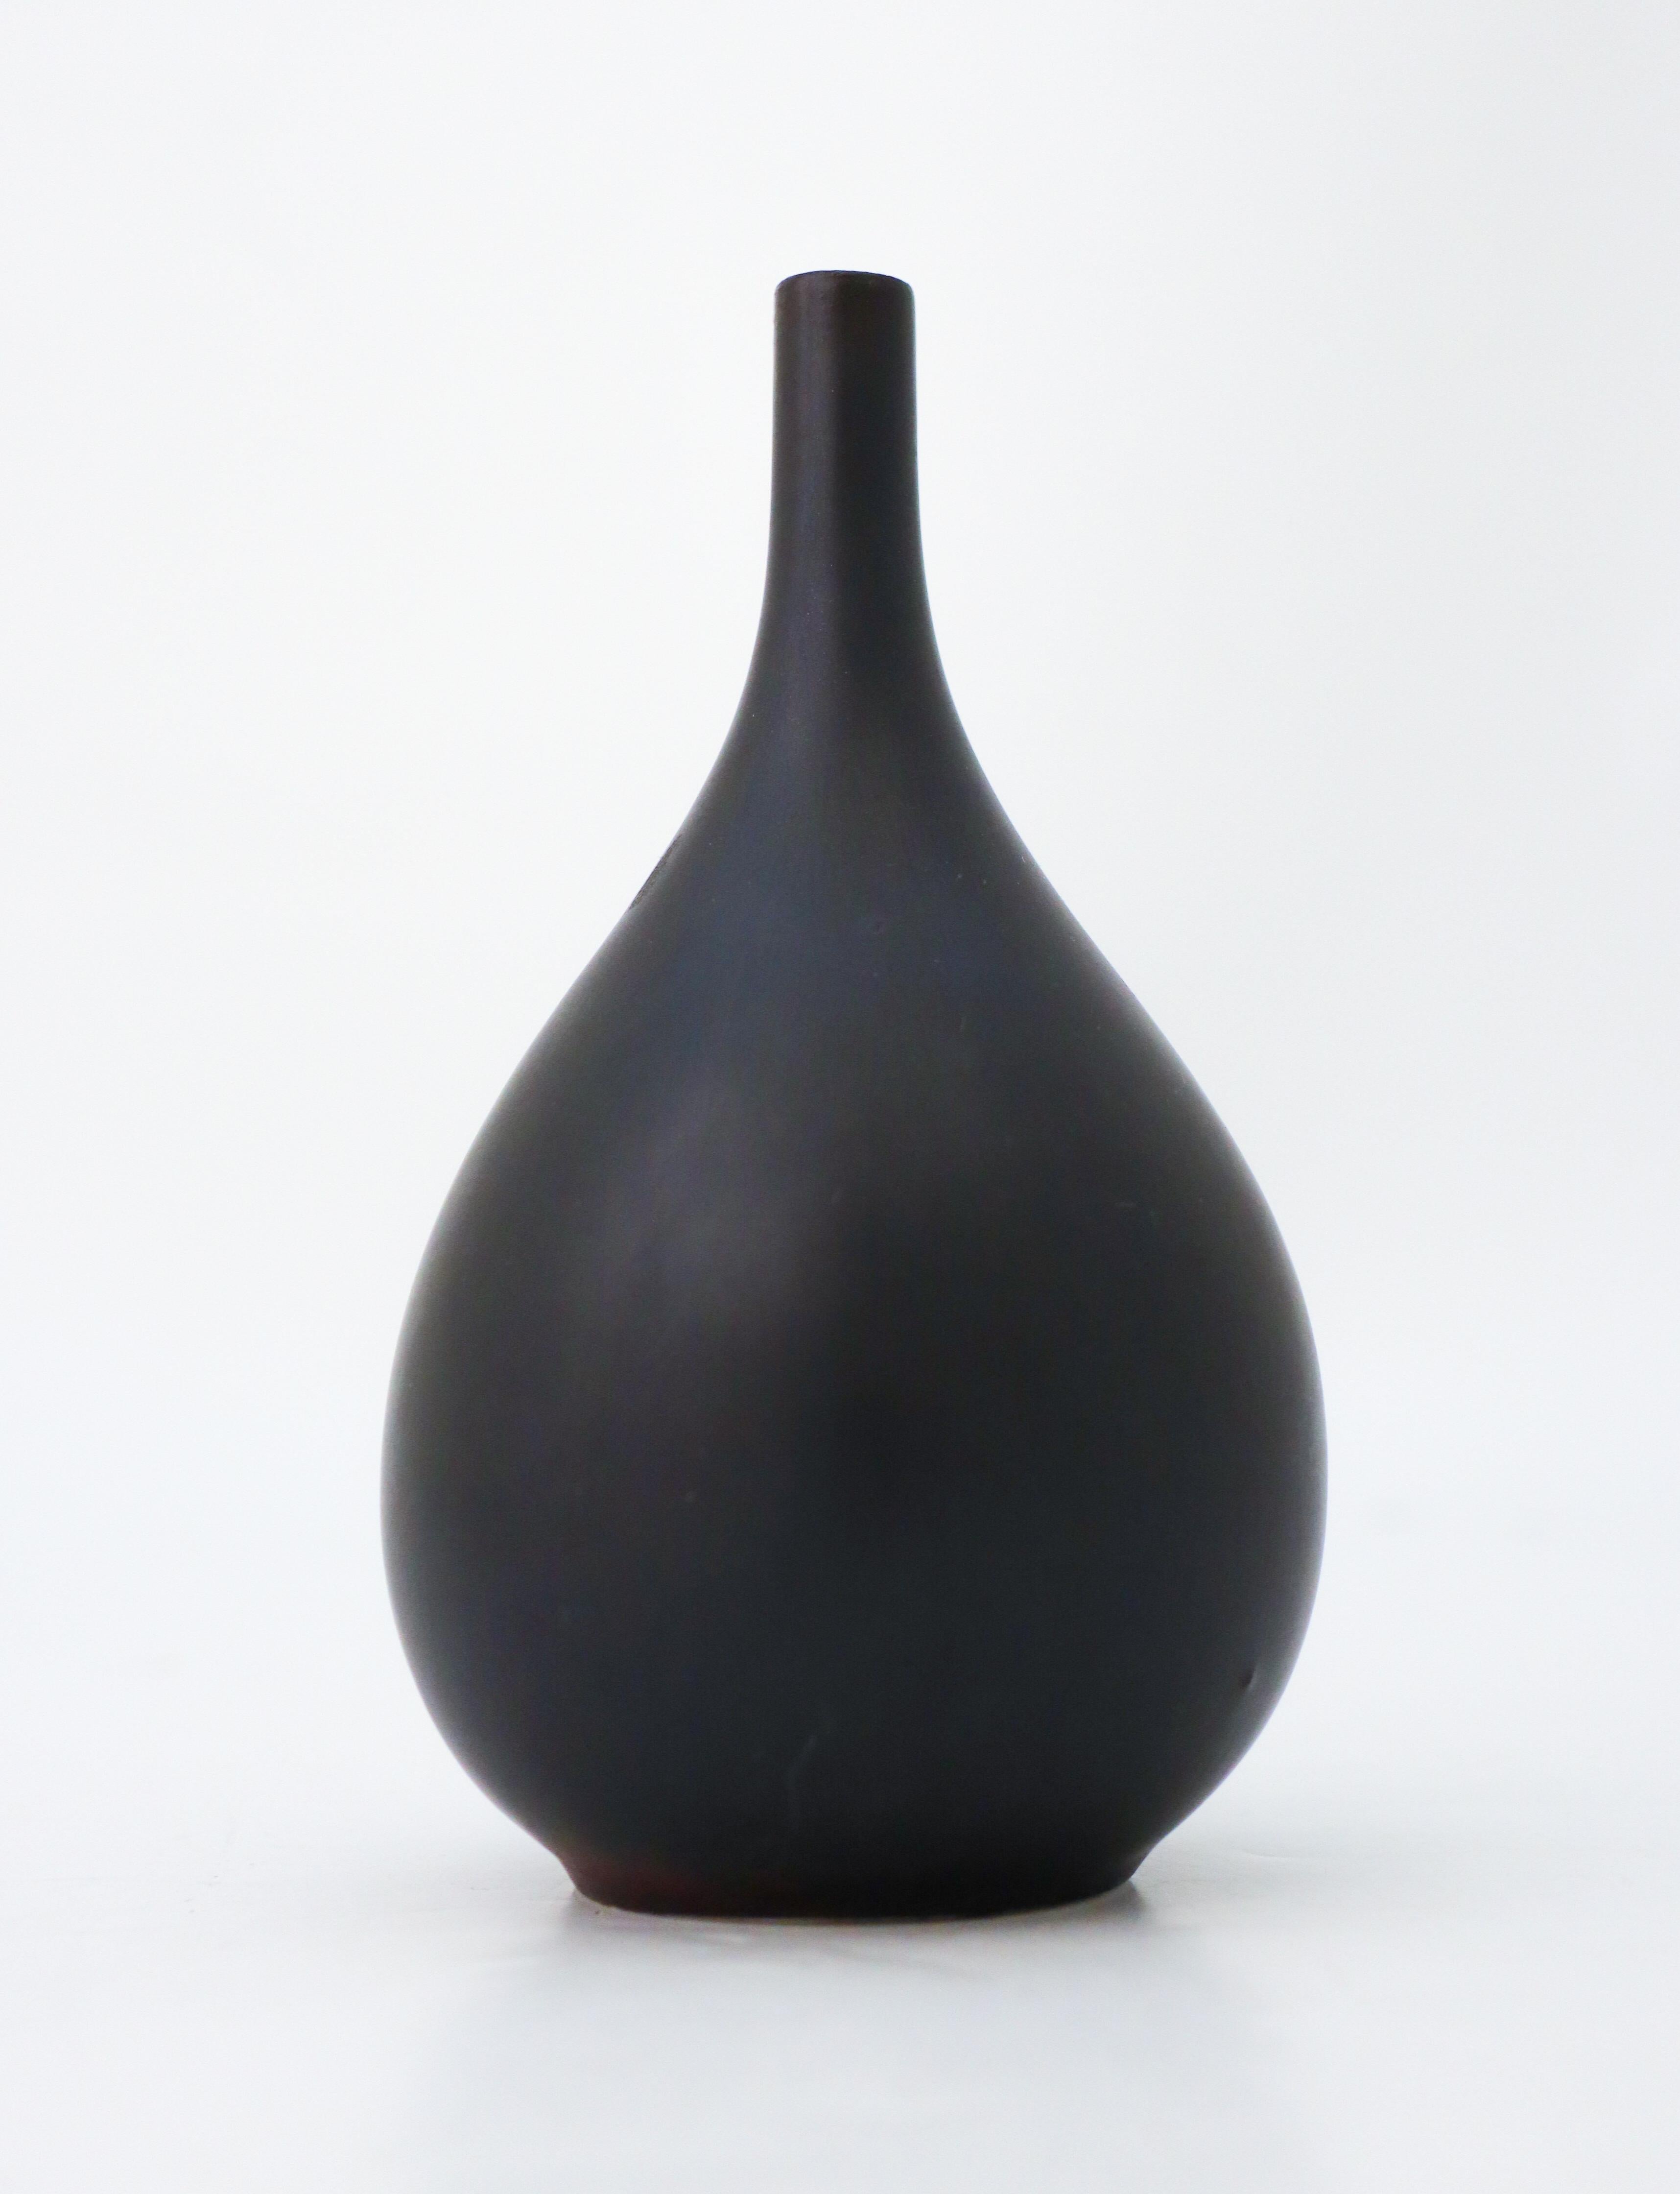 A black vase designed by Carl-Harry Stålhane at Rörstrand. The vase is 13.5 cm (5.4